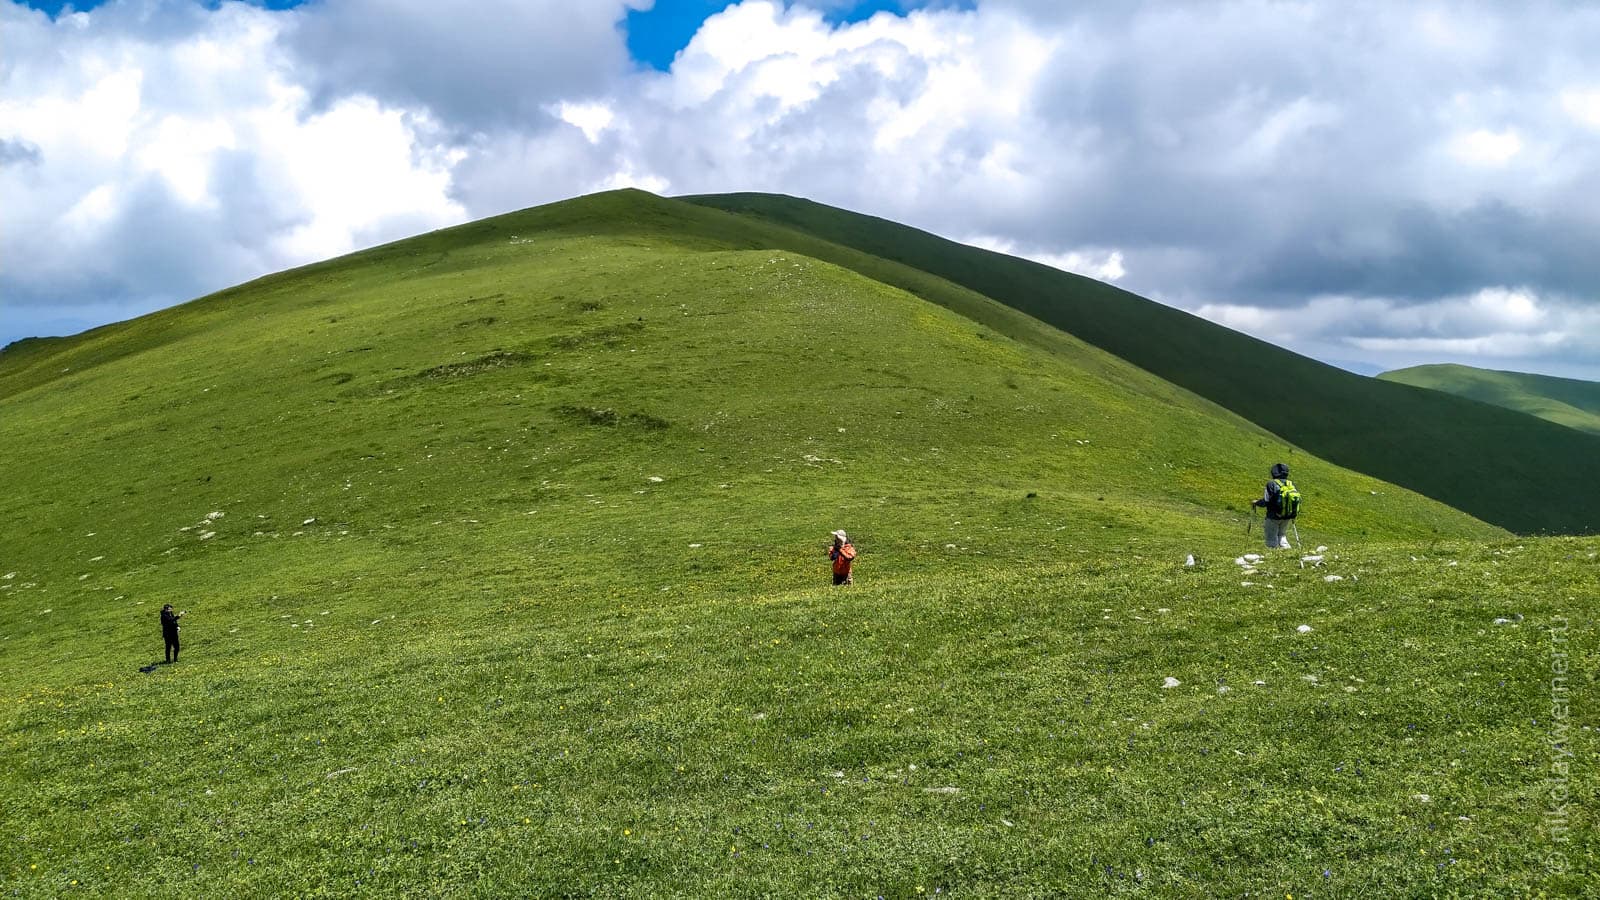 Трое туристов в отдалении среди зеленых холмистых вершин